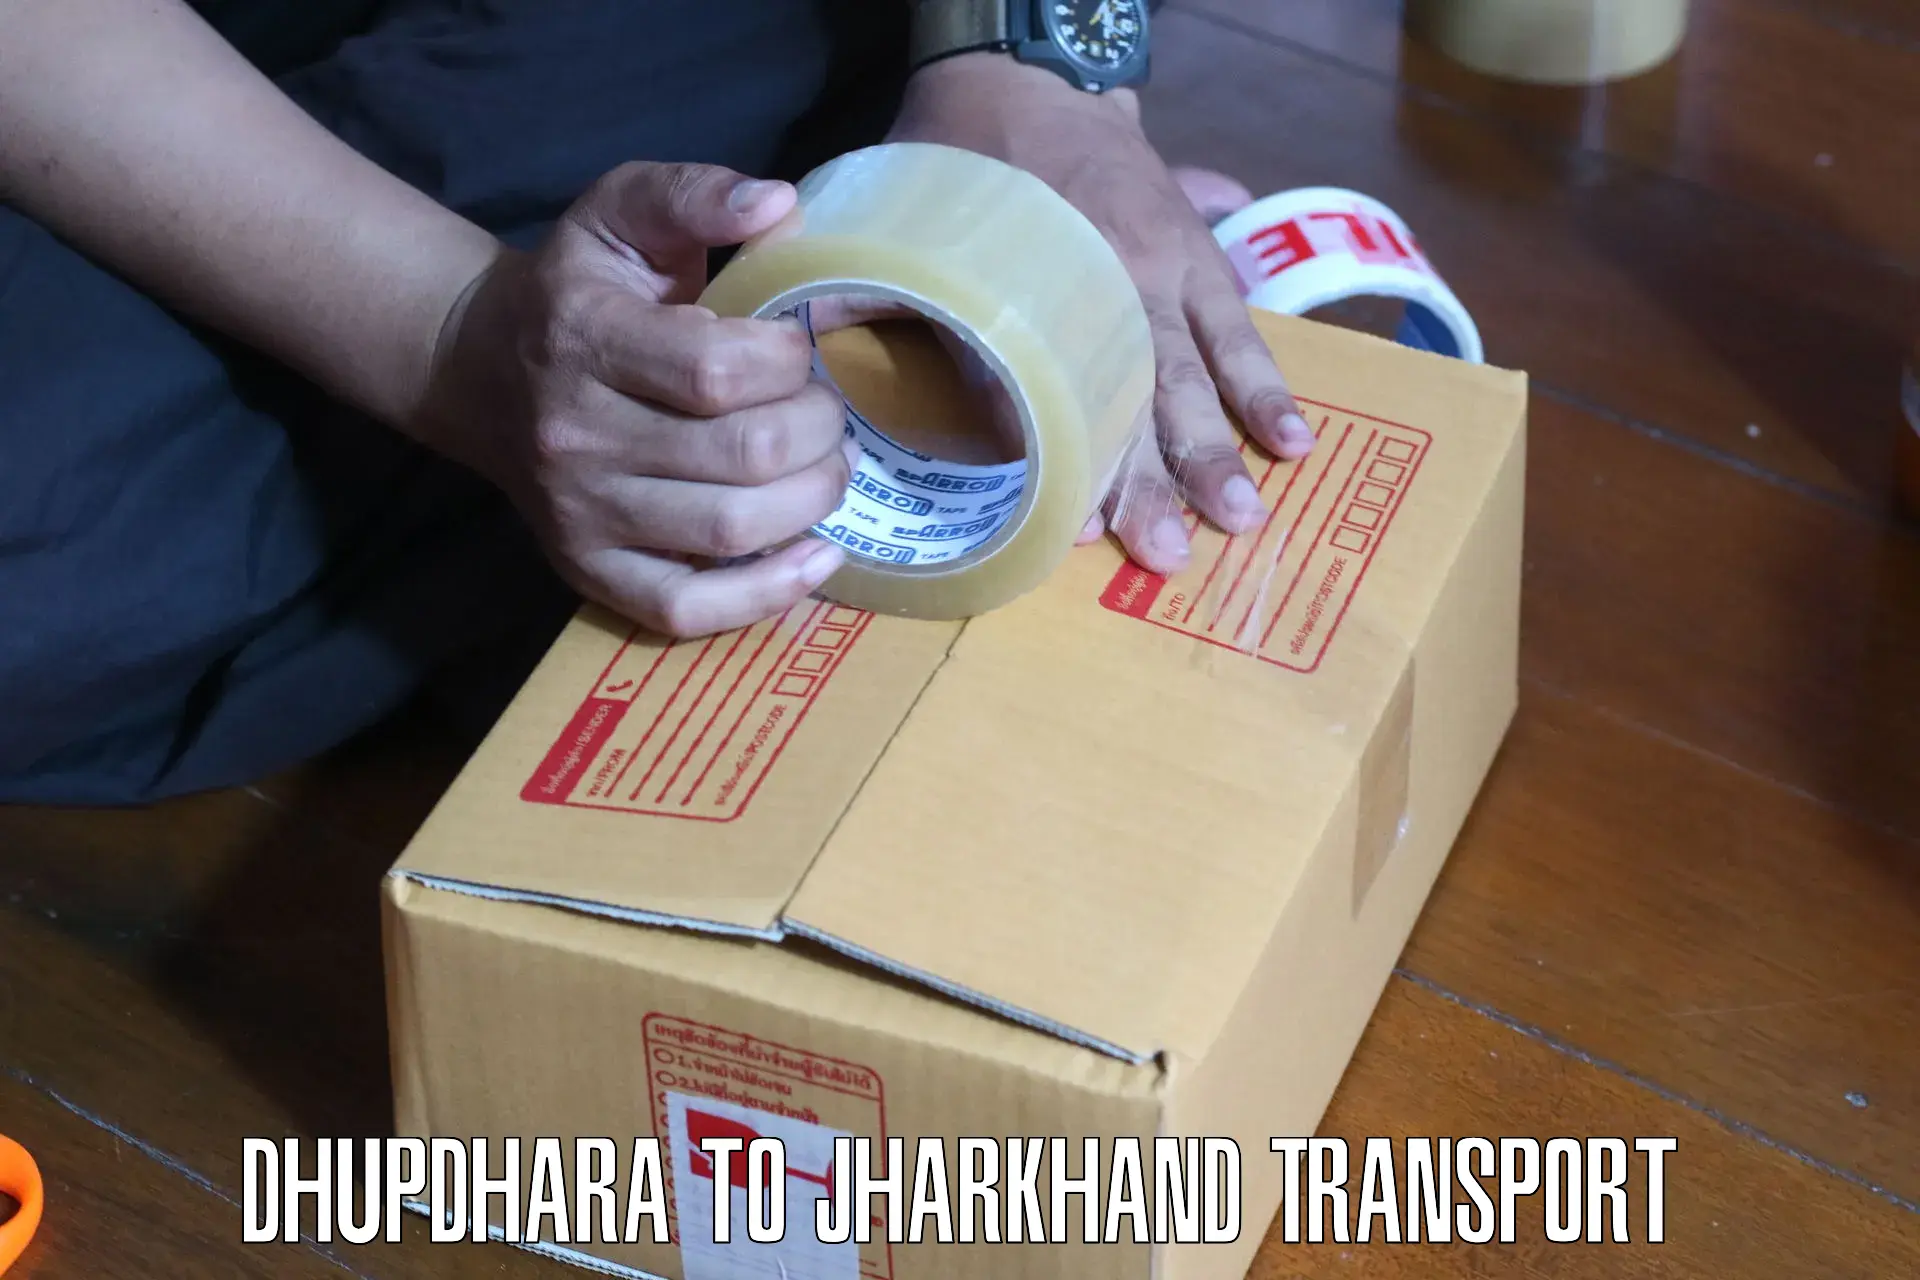 Furniture transport service Dhupdhara to Seraikella